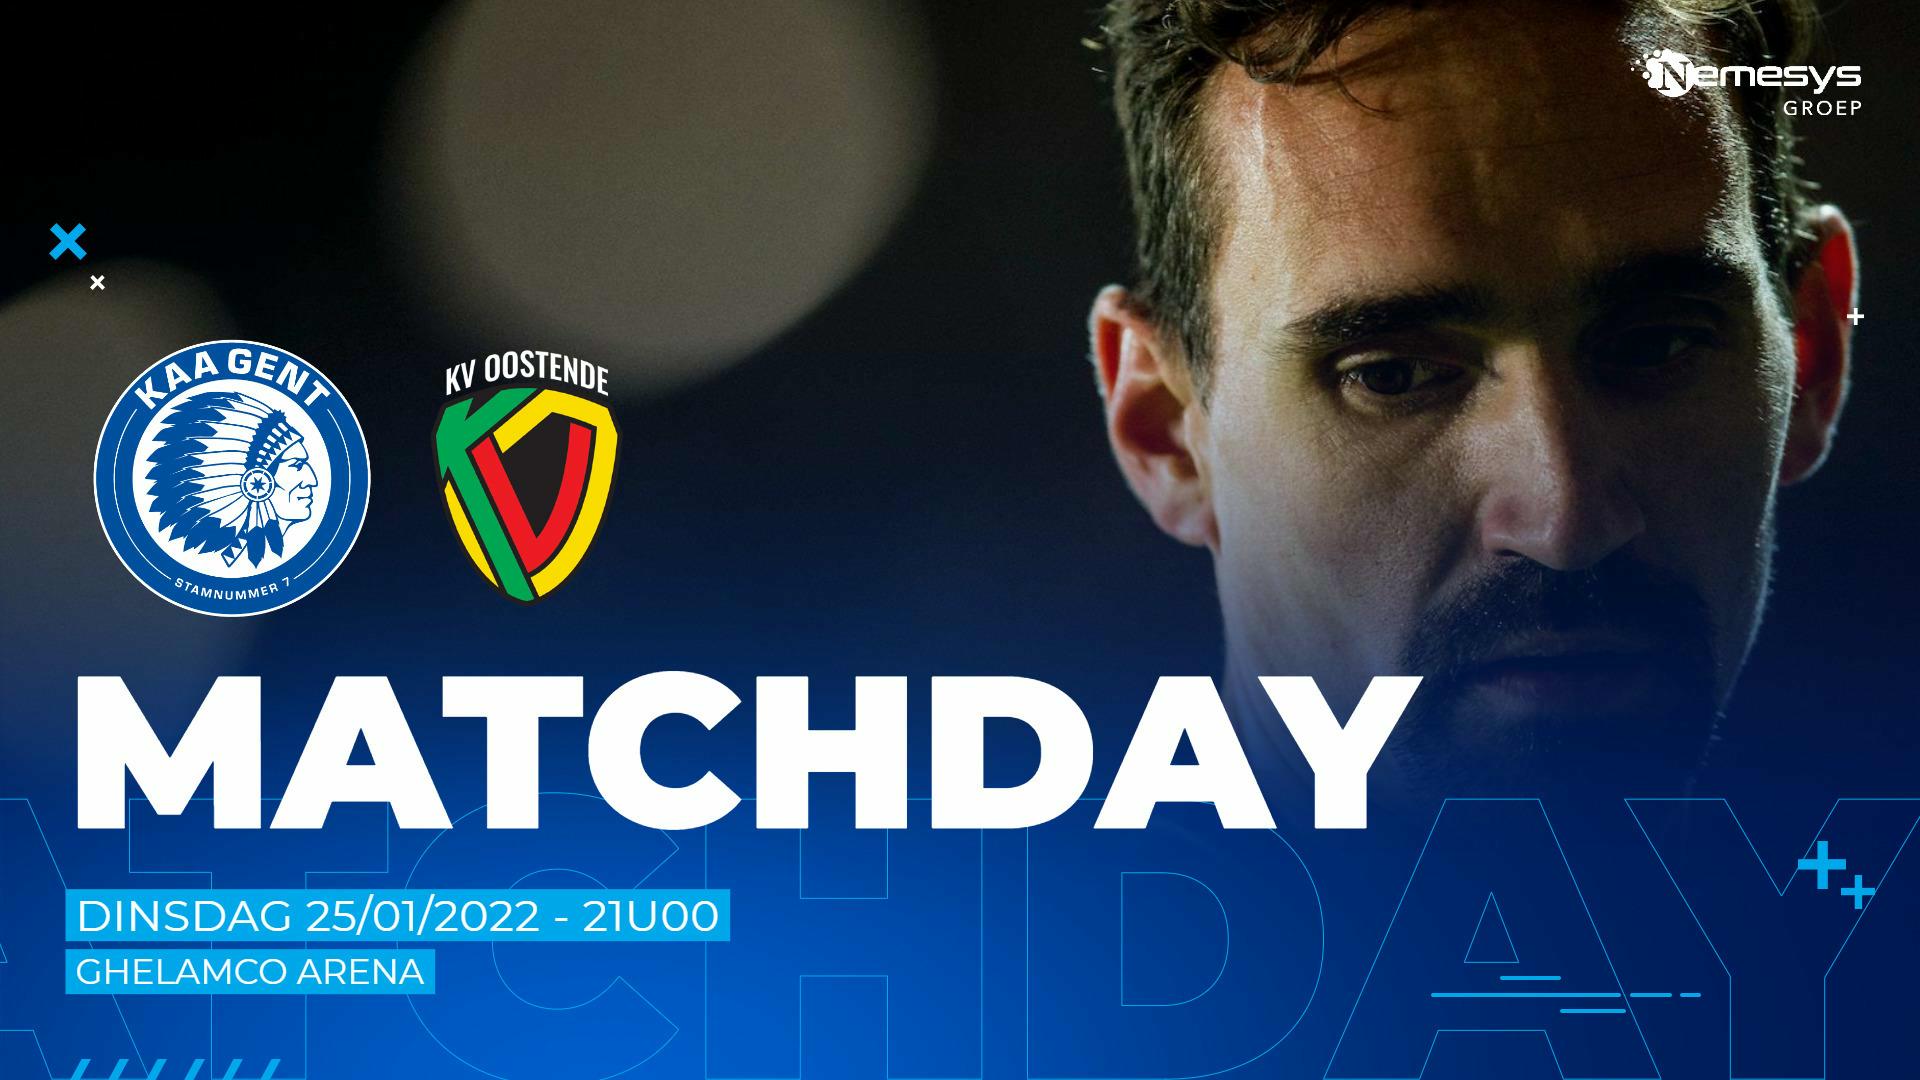 Next Match: KAA Gent - KV Oostende